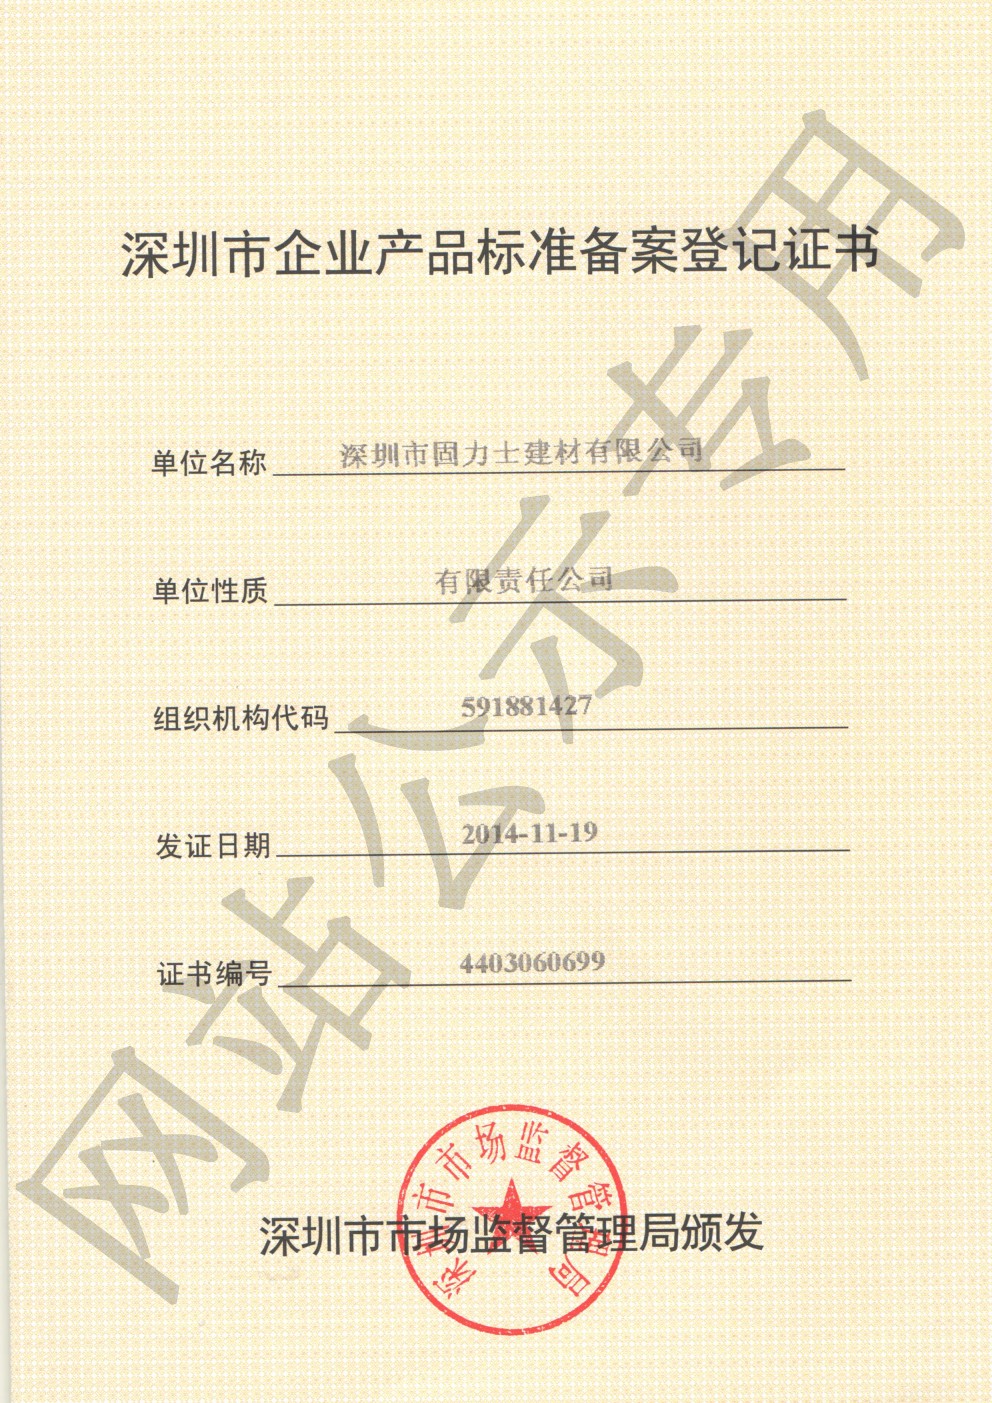 叙永企业产品标准登记证书